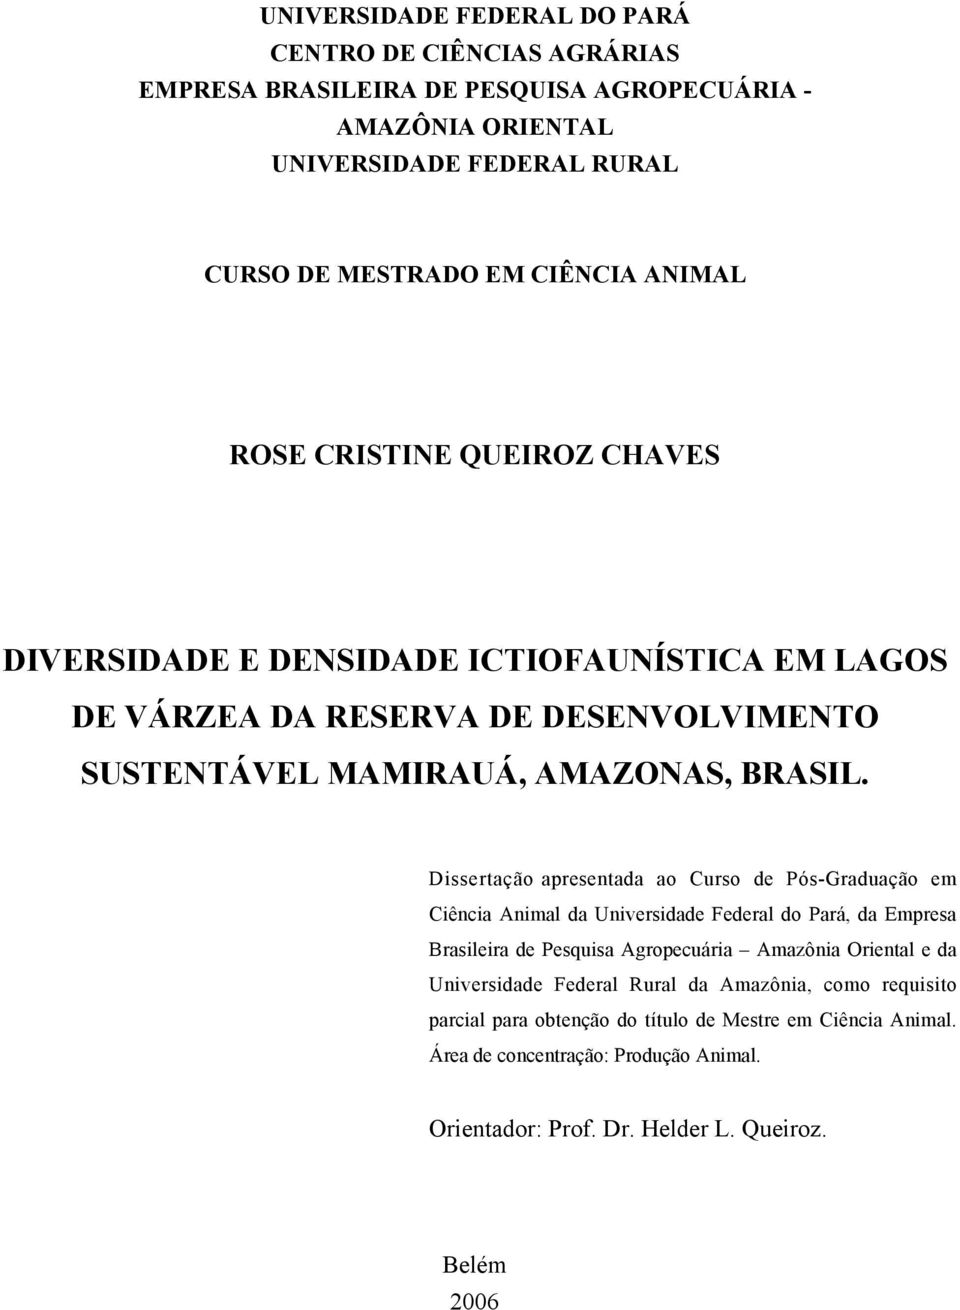 Dissertação apresentada ao Curso de Pós-Graduação em Ciência Animal da Universidade Federal do Pará, da Empresa Brasileira de Pesquisa Agropecuária Amazônia Oriental e da